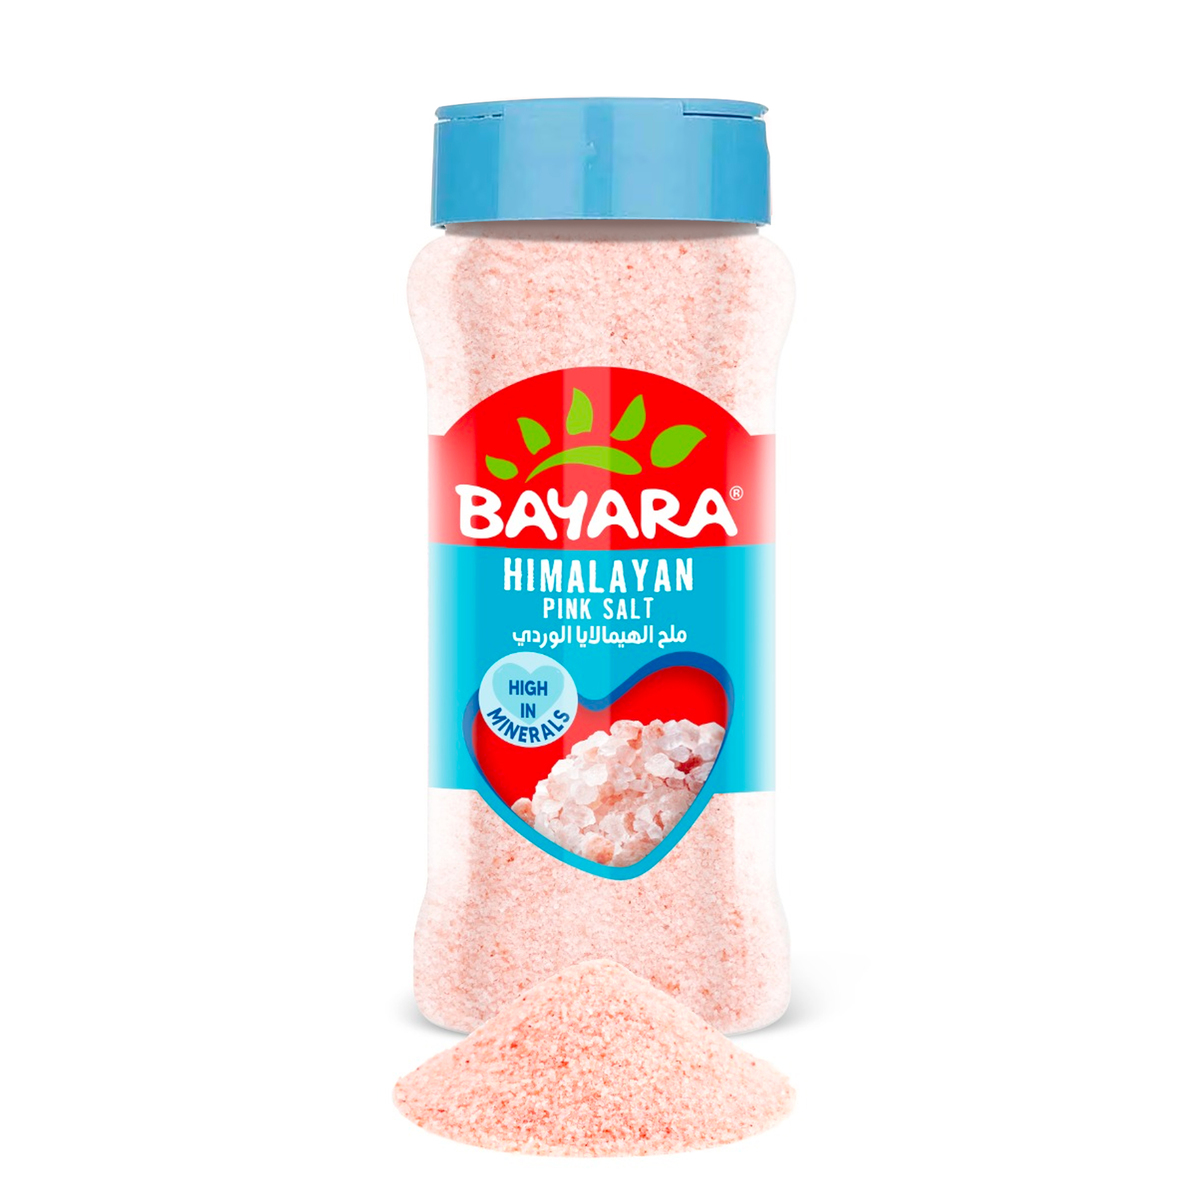 Bayara Himalayan Pink Salt Value Pack 2 x 400 g